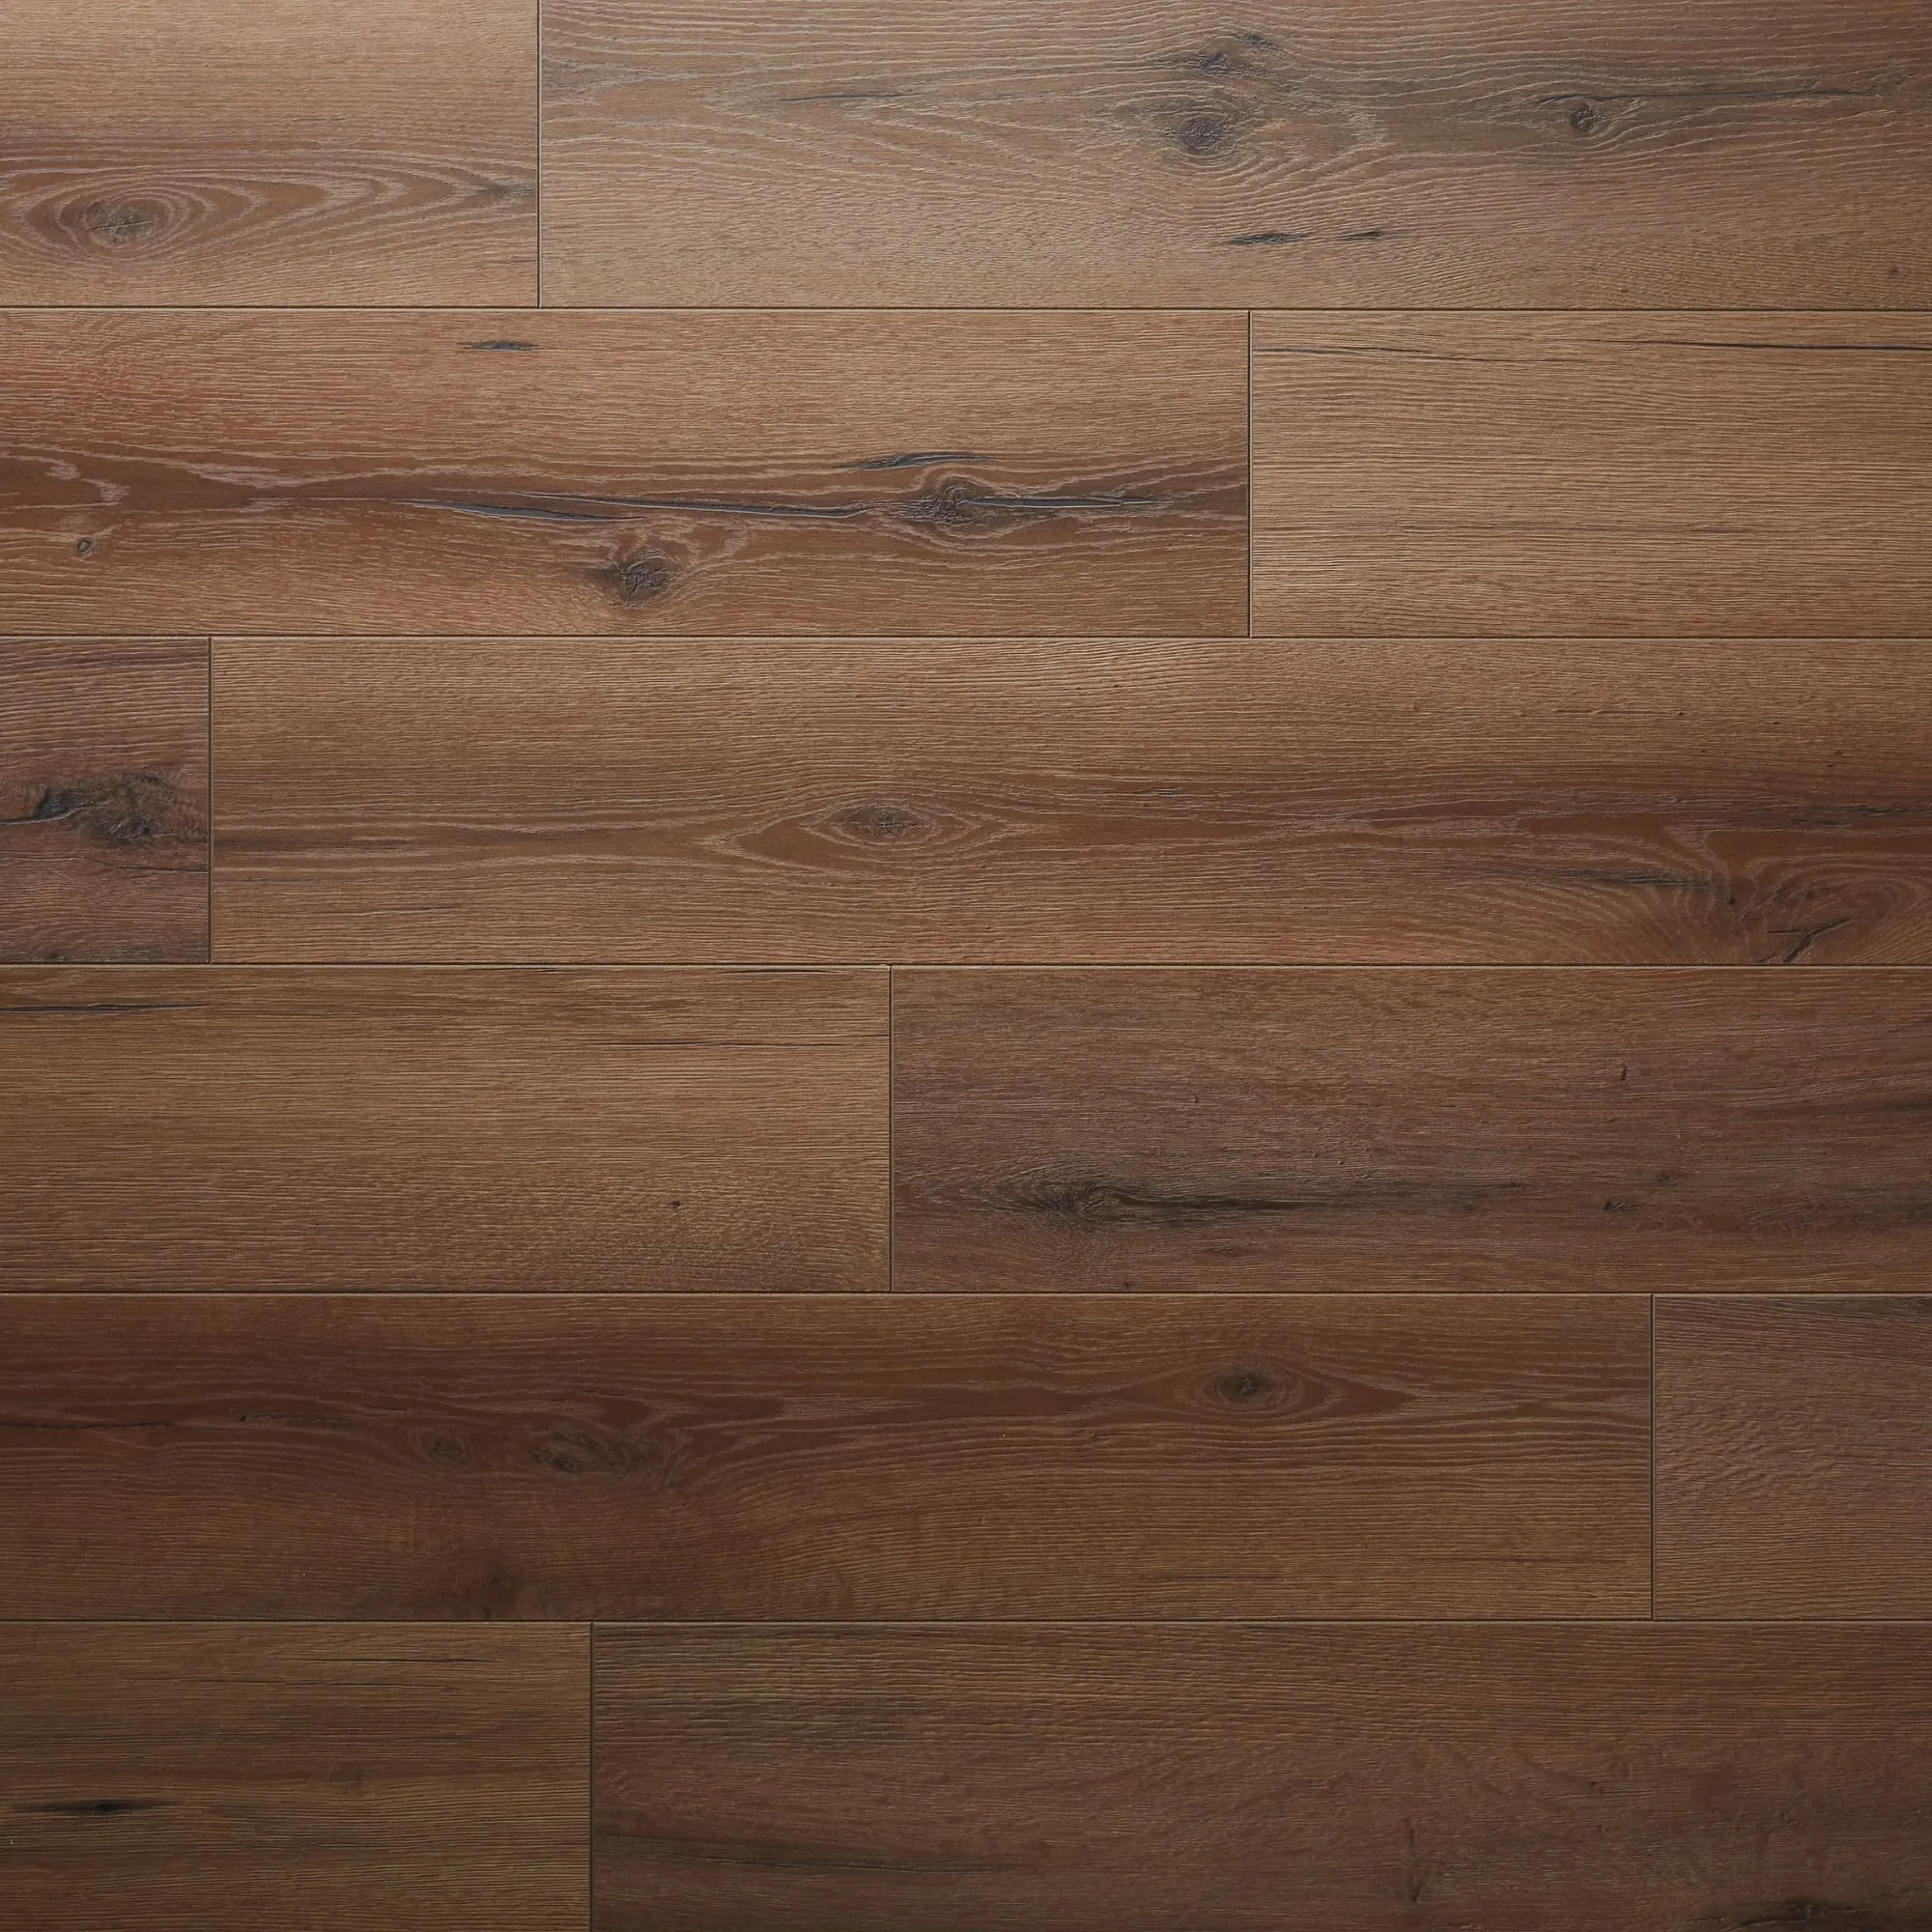 GoodHome Padiham Brown Dark oak effect Laminate Flooring, 1.64m² Pack of 8